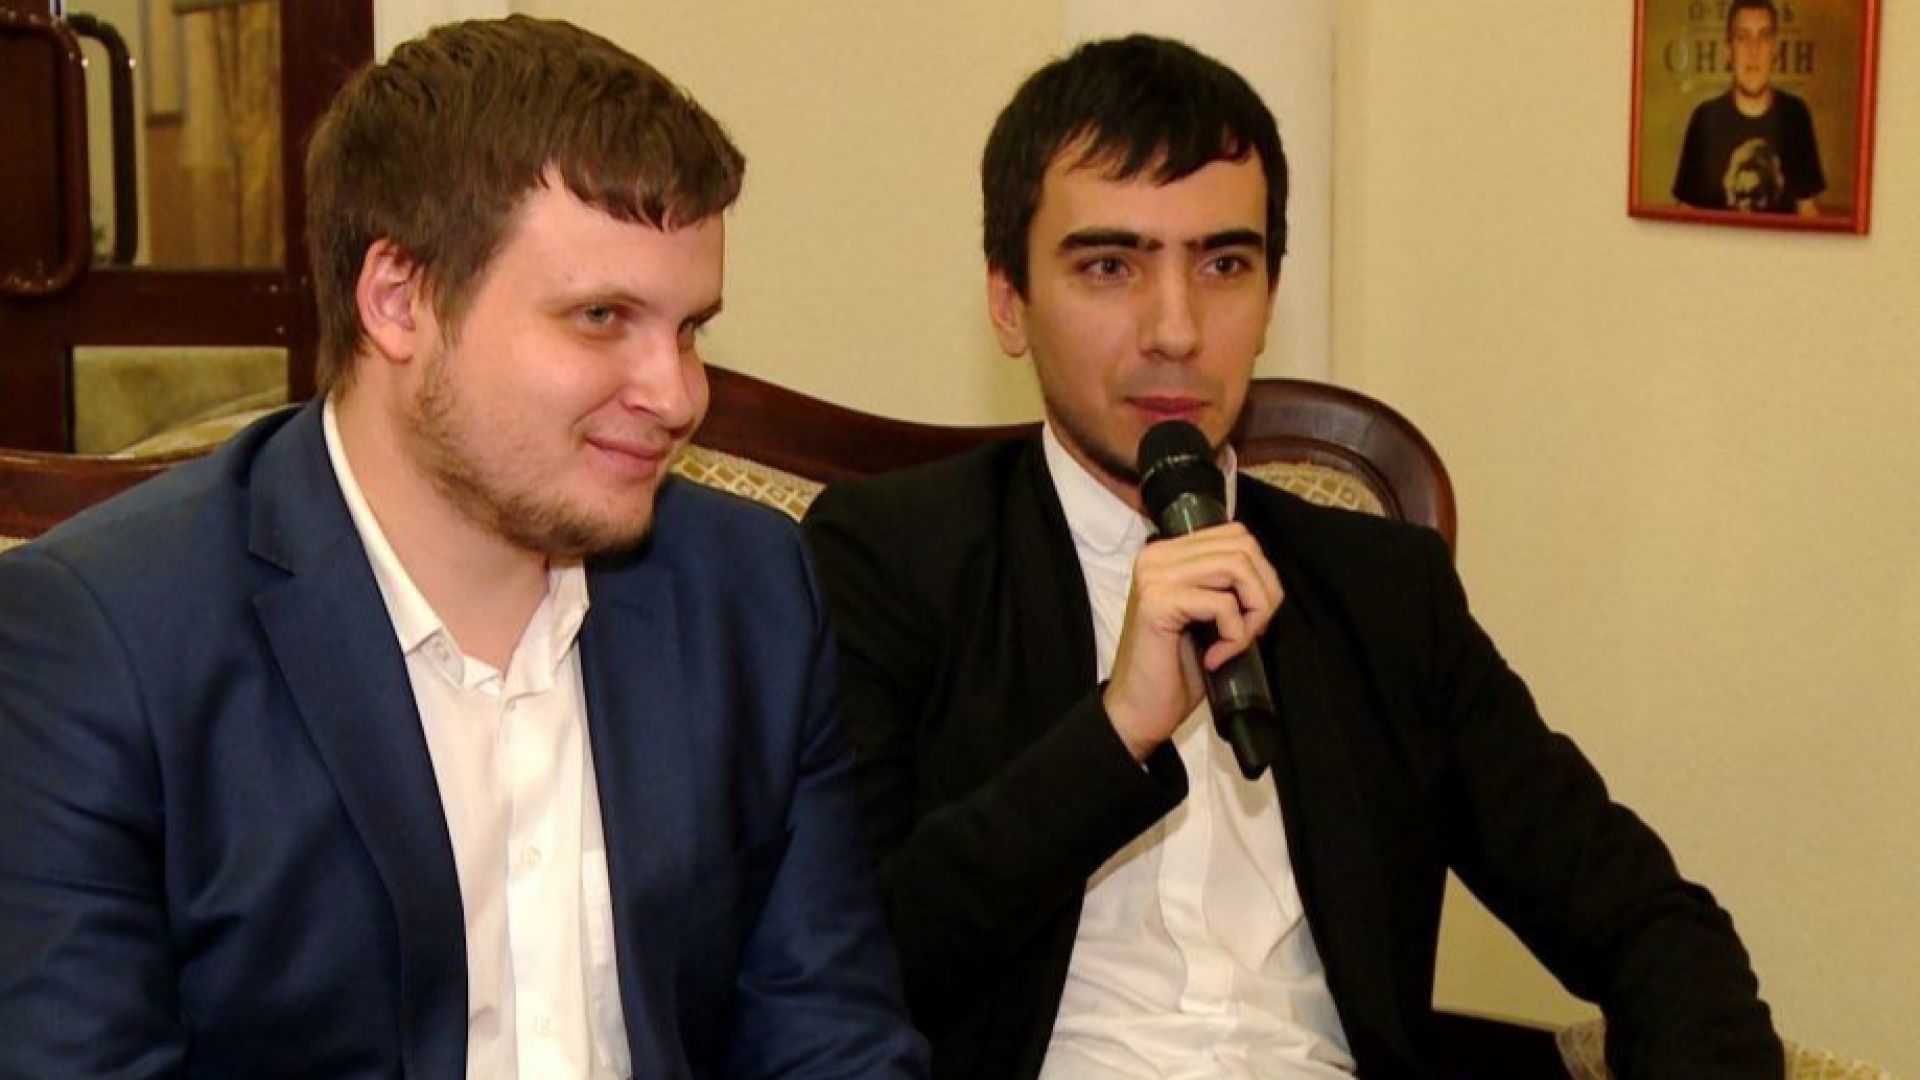 Руските комици Владимир Кузнецов и Алексей Столяров известни като Вован